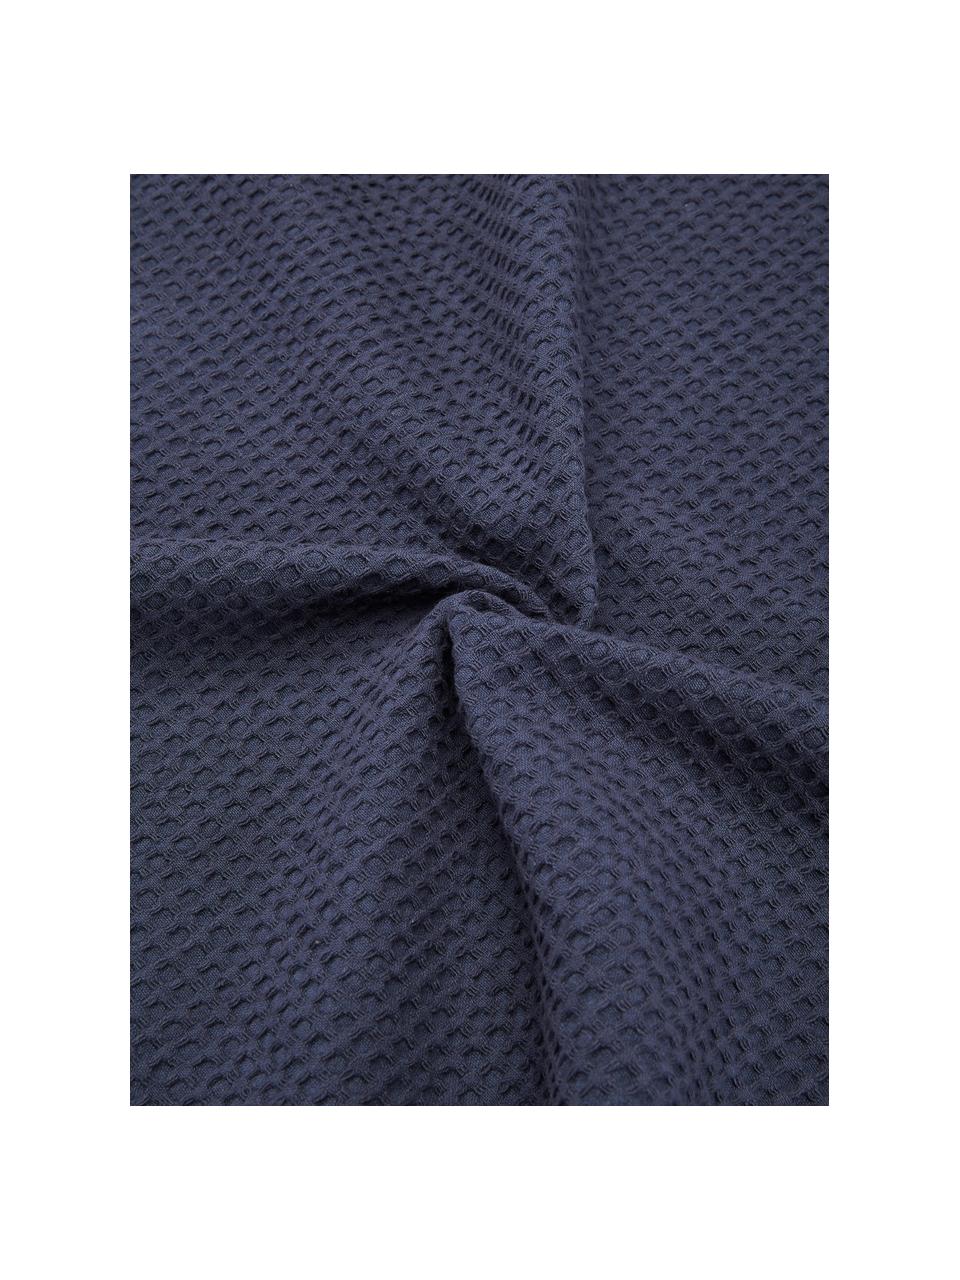 Waffelpiqué-Tagesdecke  Nordic aus Baumwolle in Blau, 100 % Baumwolle, Dunkelblau, B 260 x L 280 cm (für Betten bis 200 x 200 cm)